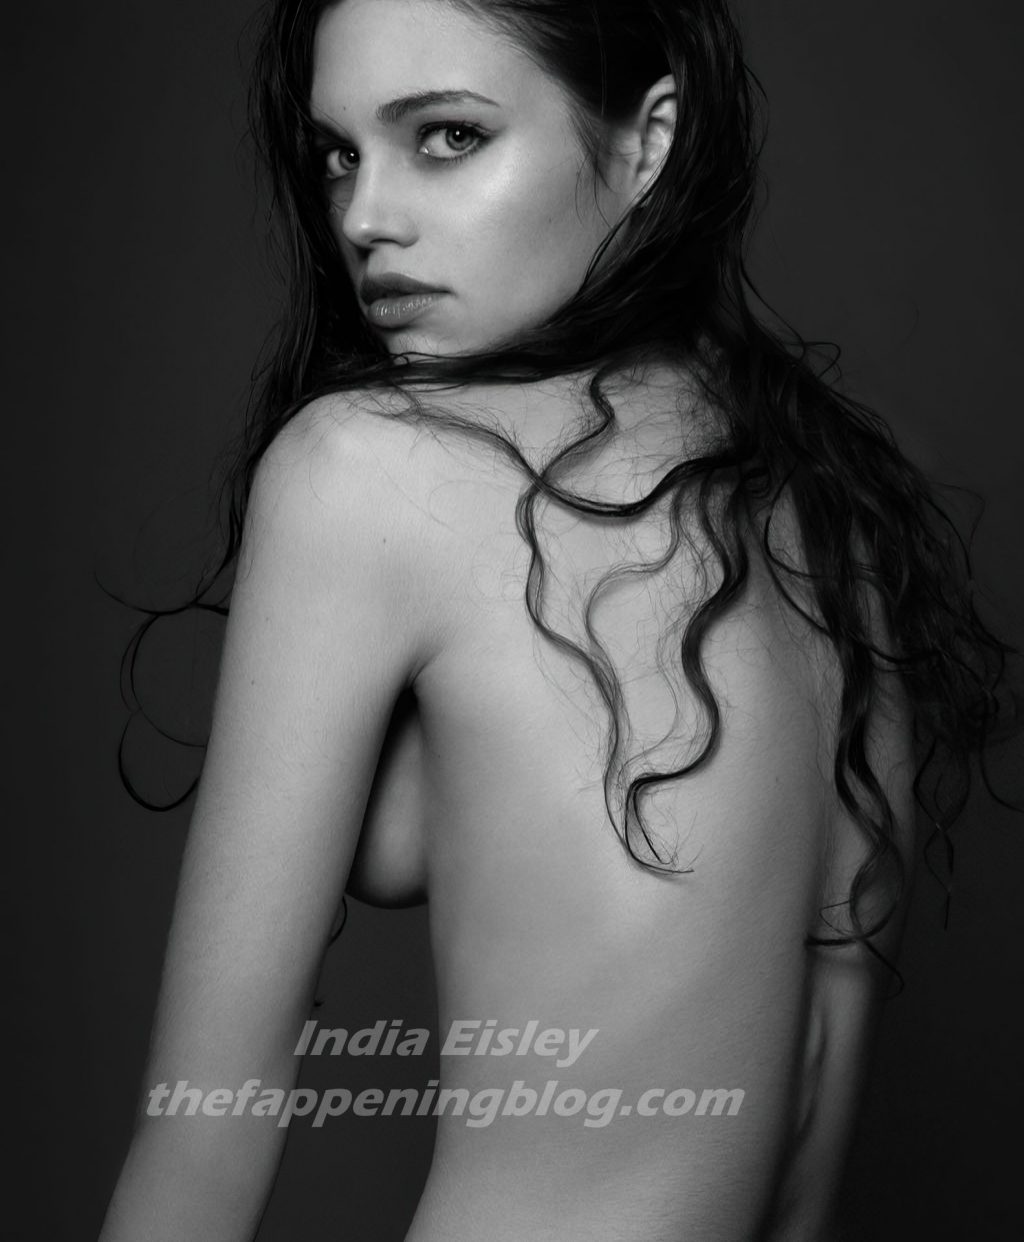 India eisley naked